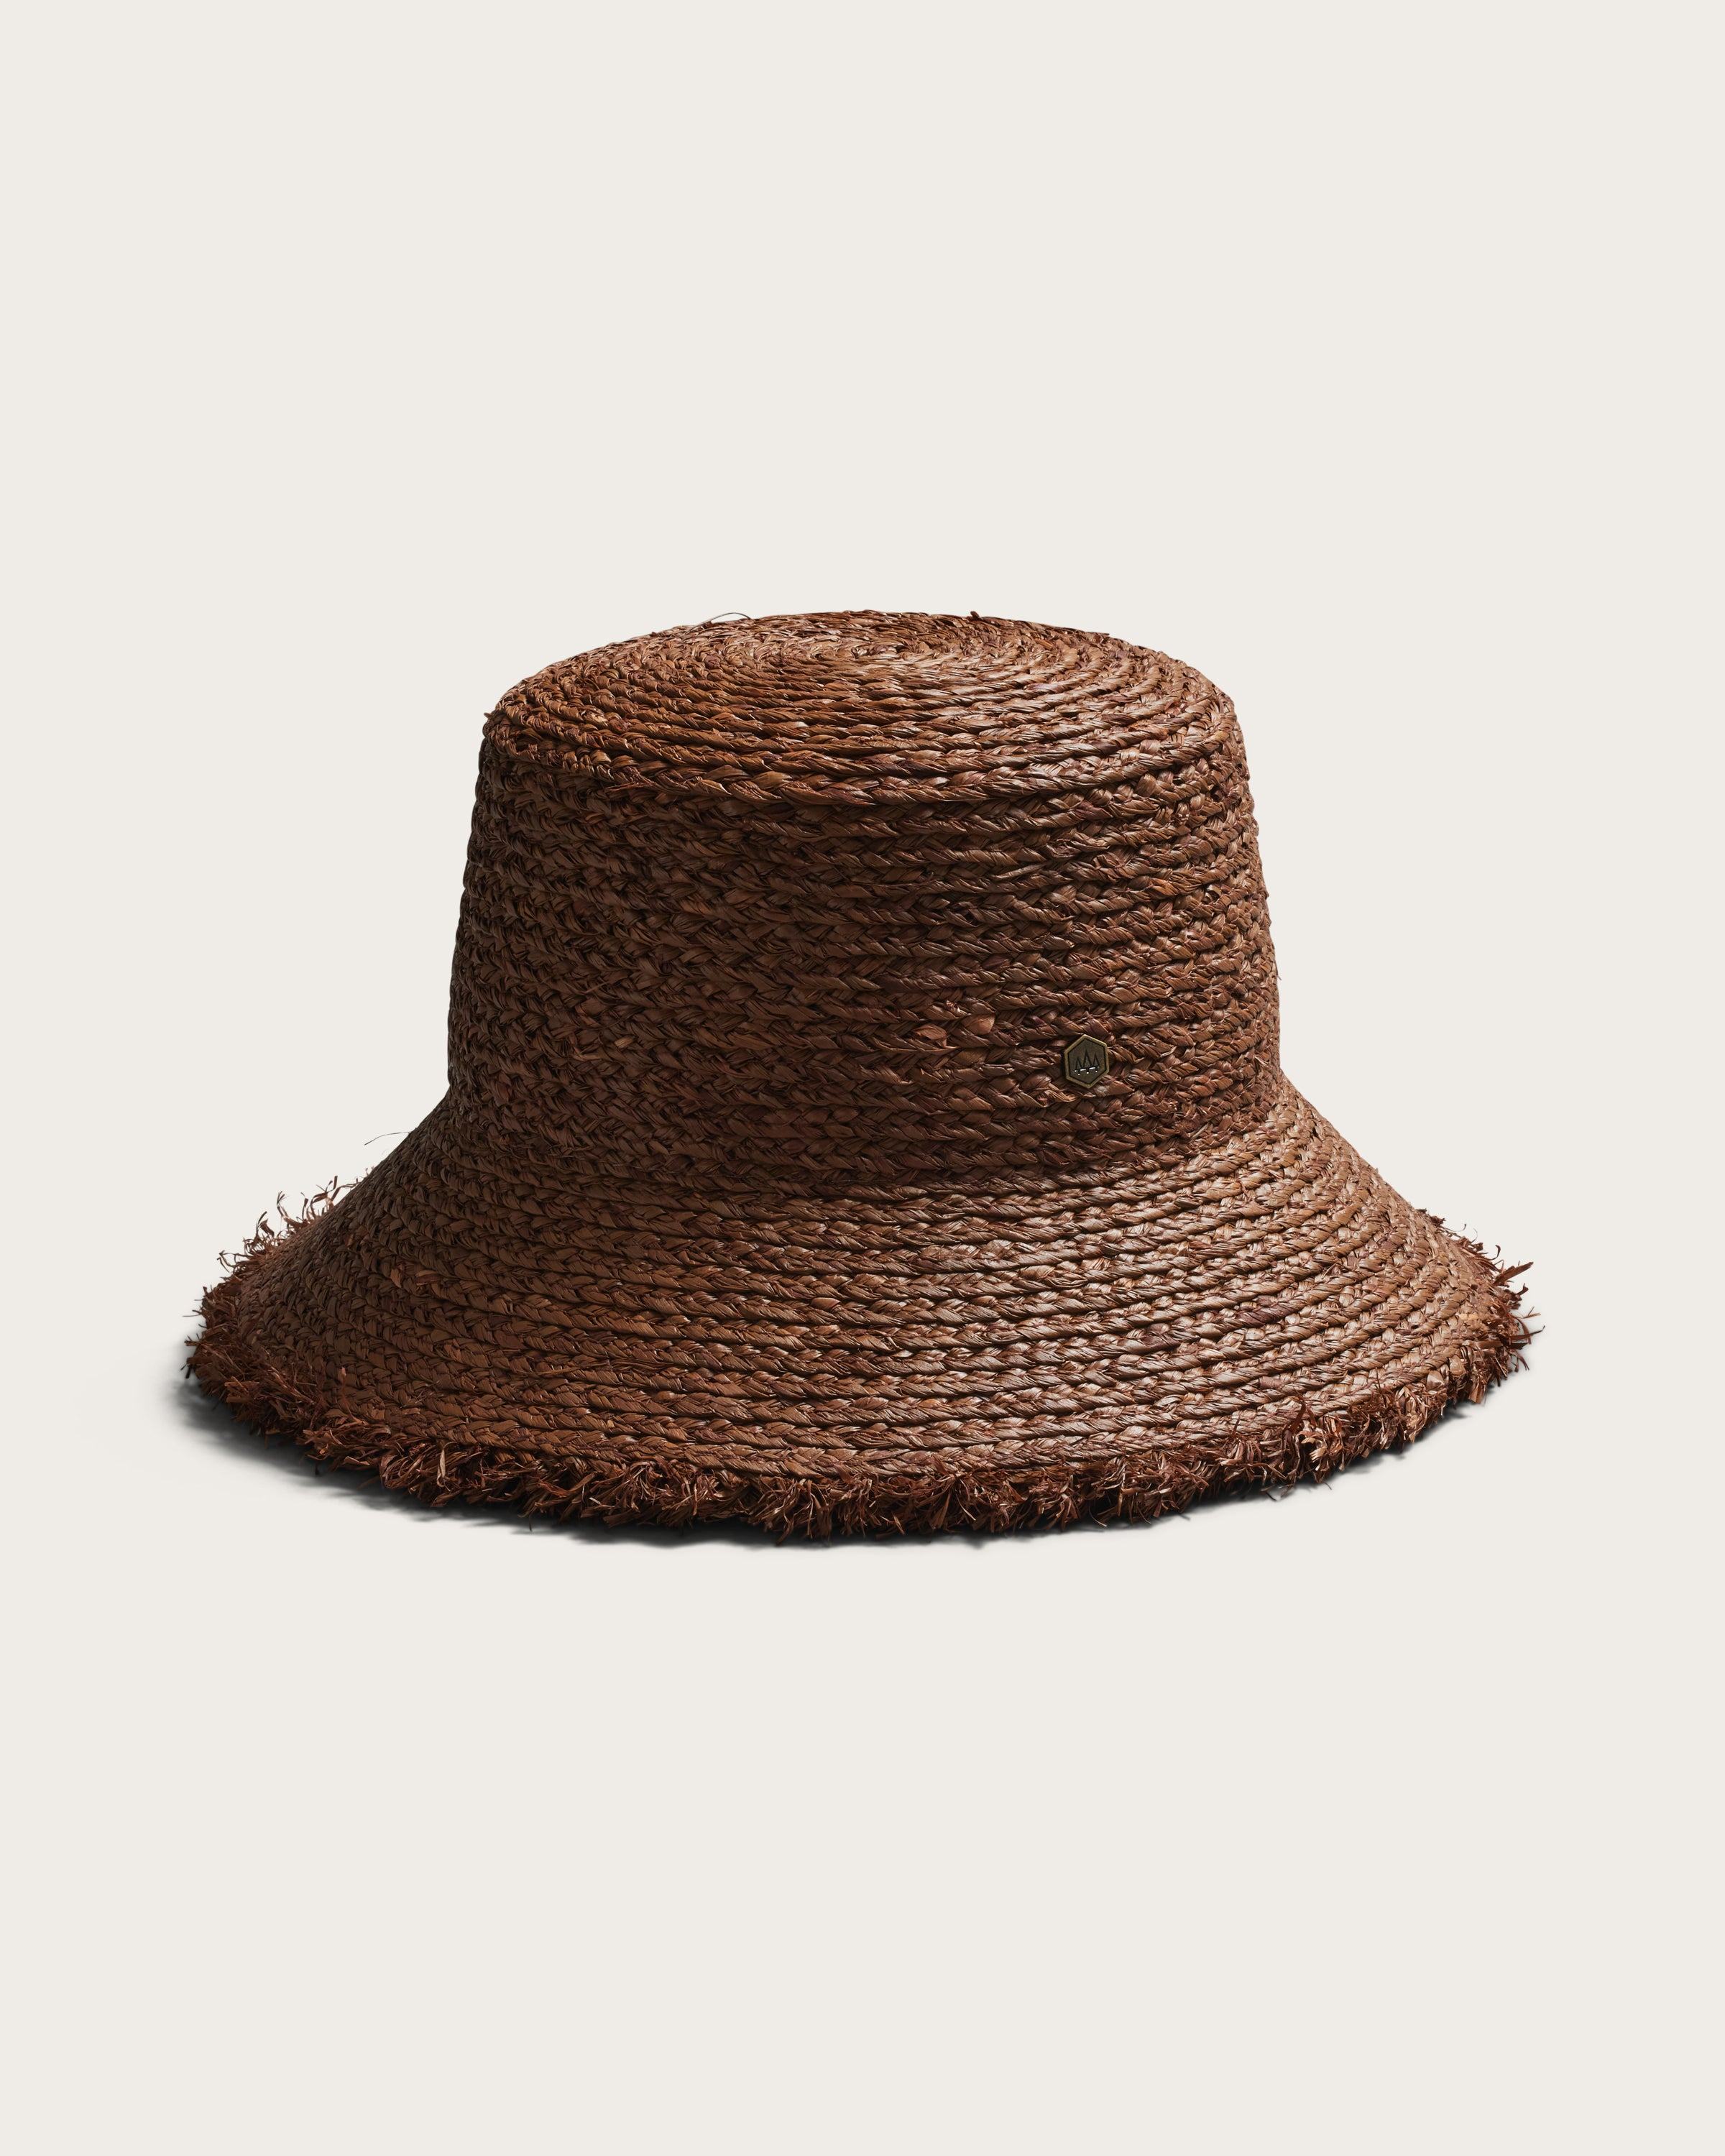 Hemlock Lenny Straw Bucket Hat in Mocha detail